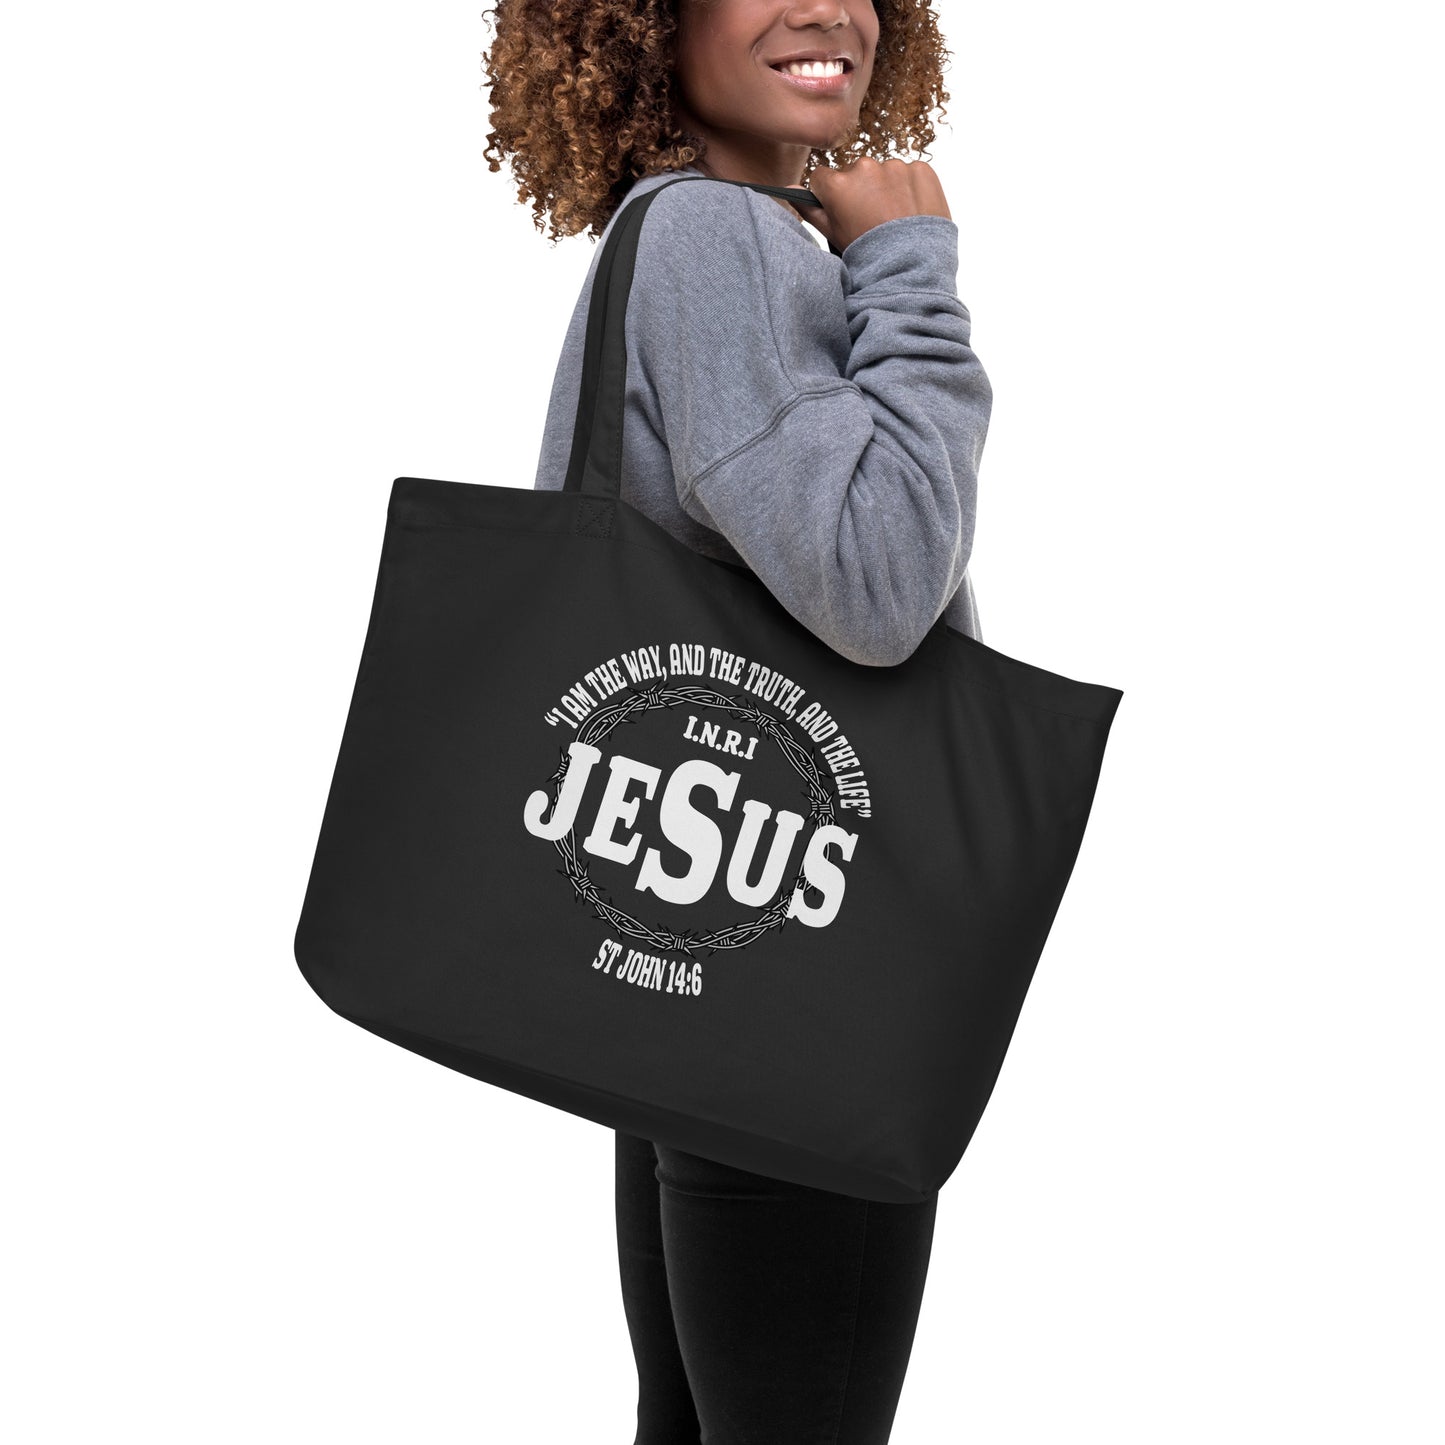 Jesus the Way John 14:6 Large organic tote bag